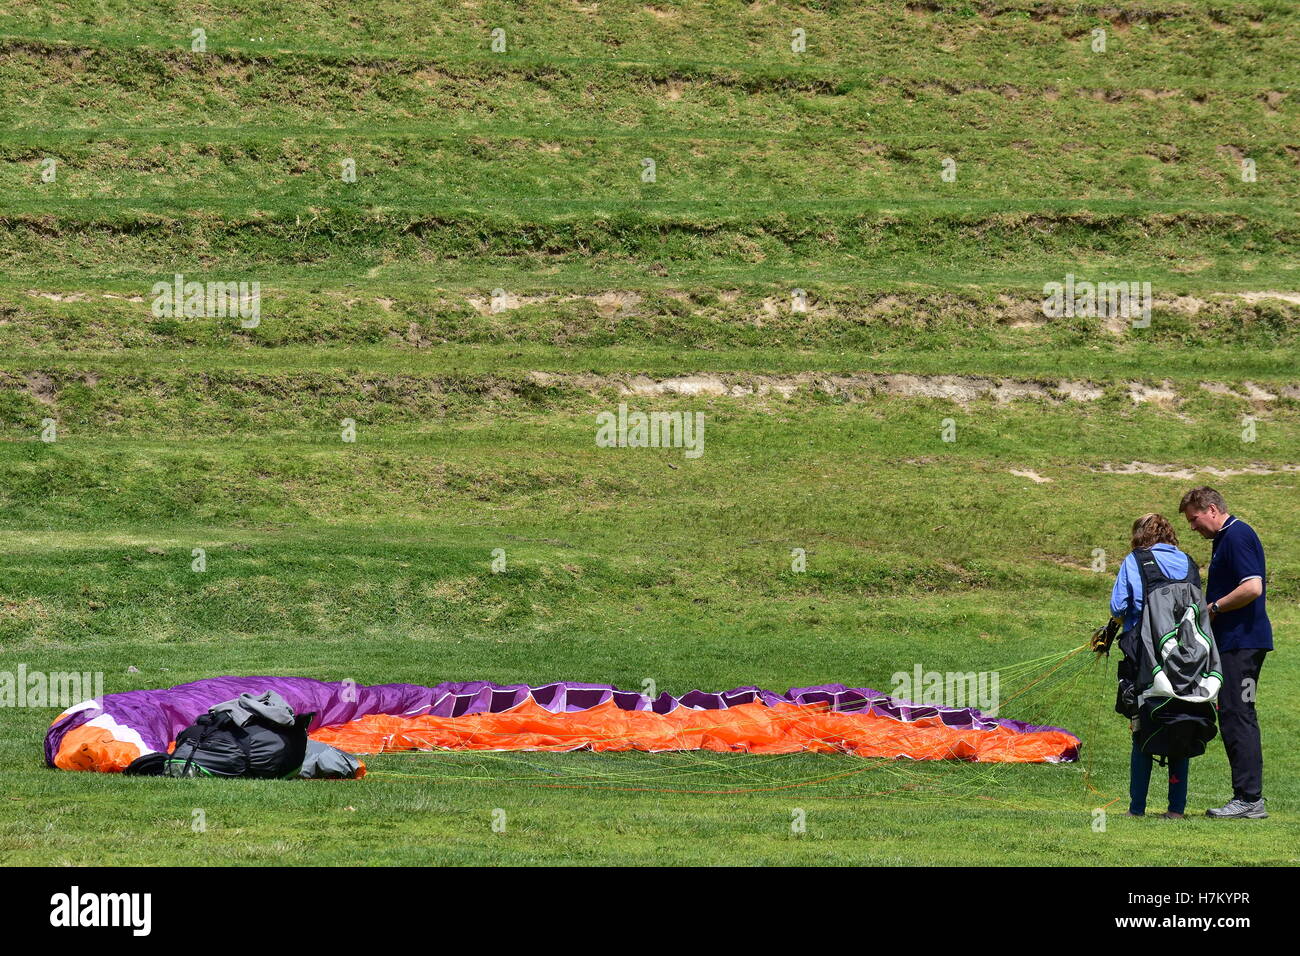 Imparare il parapendio con un coloratissimo paracadute sgonfiato in appoggio sull'erba. Foto Stock